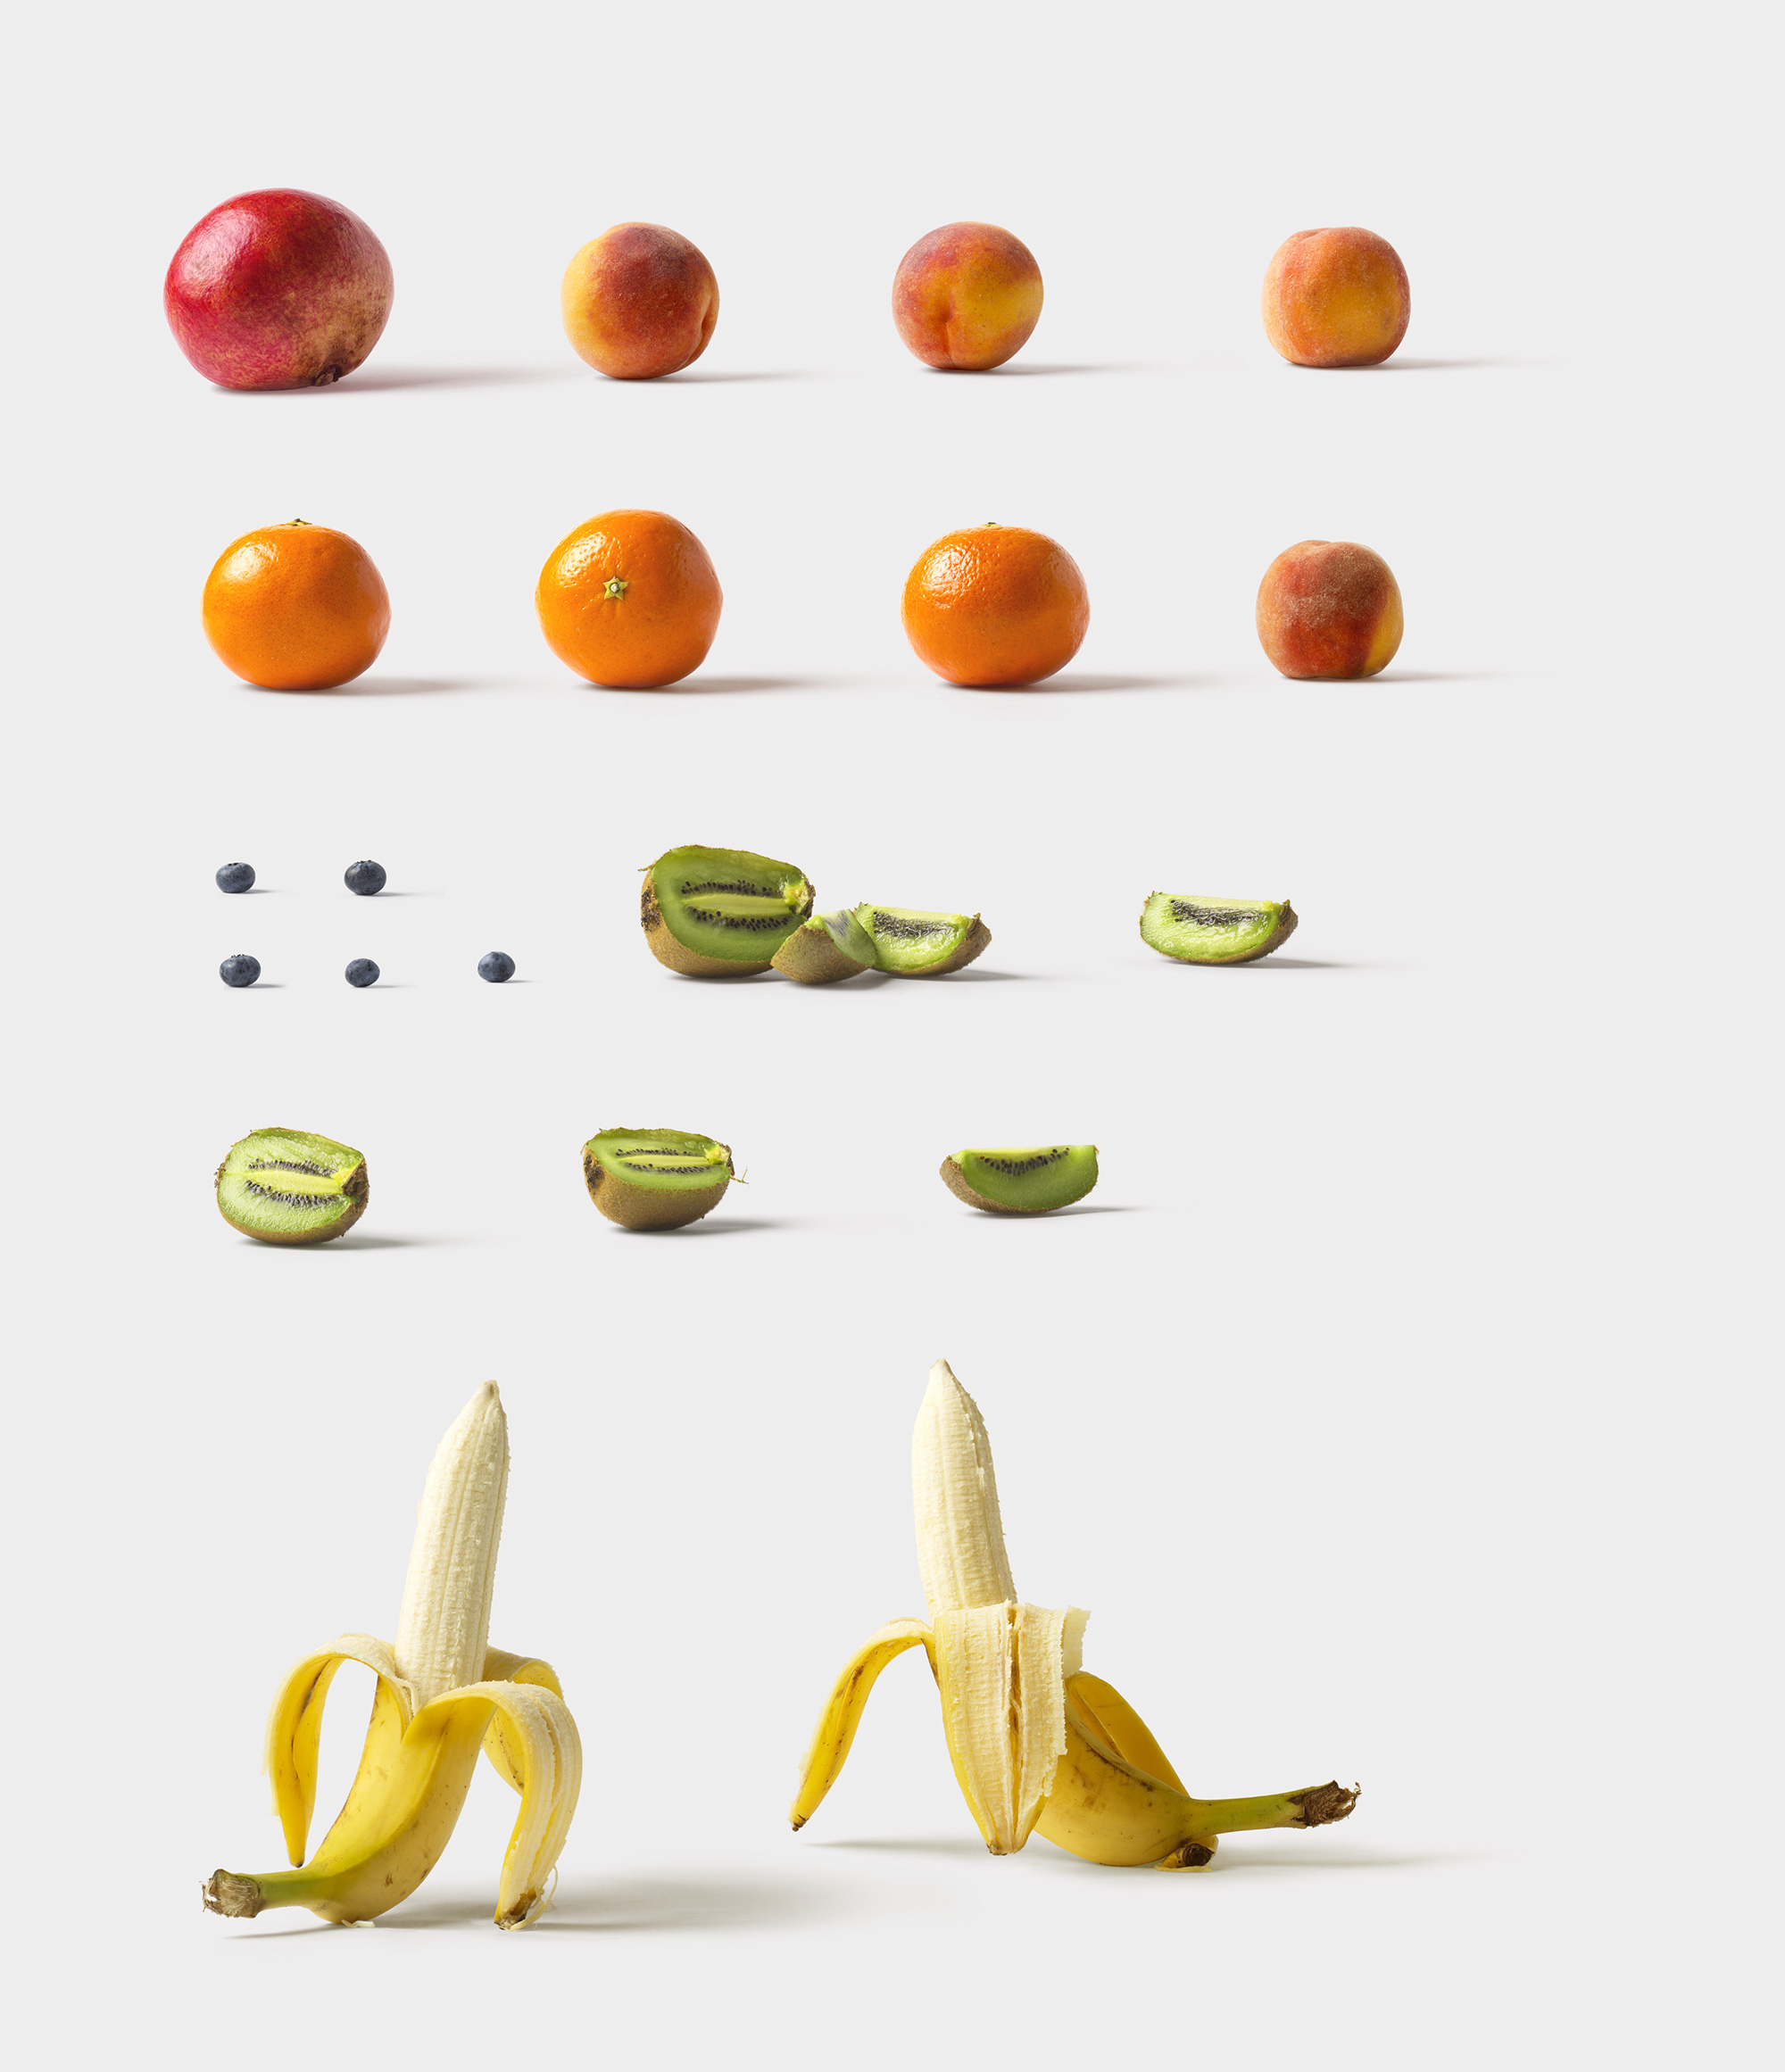 海量蔬菜水果高清实物照片样机素材Fruits and Vegetables插图